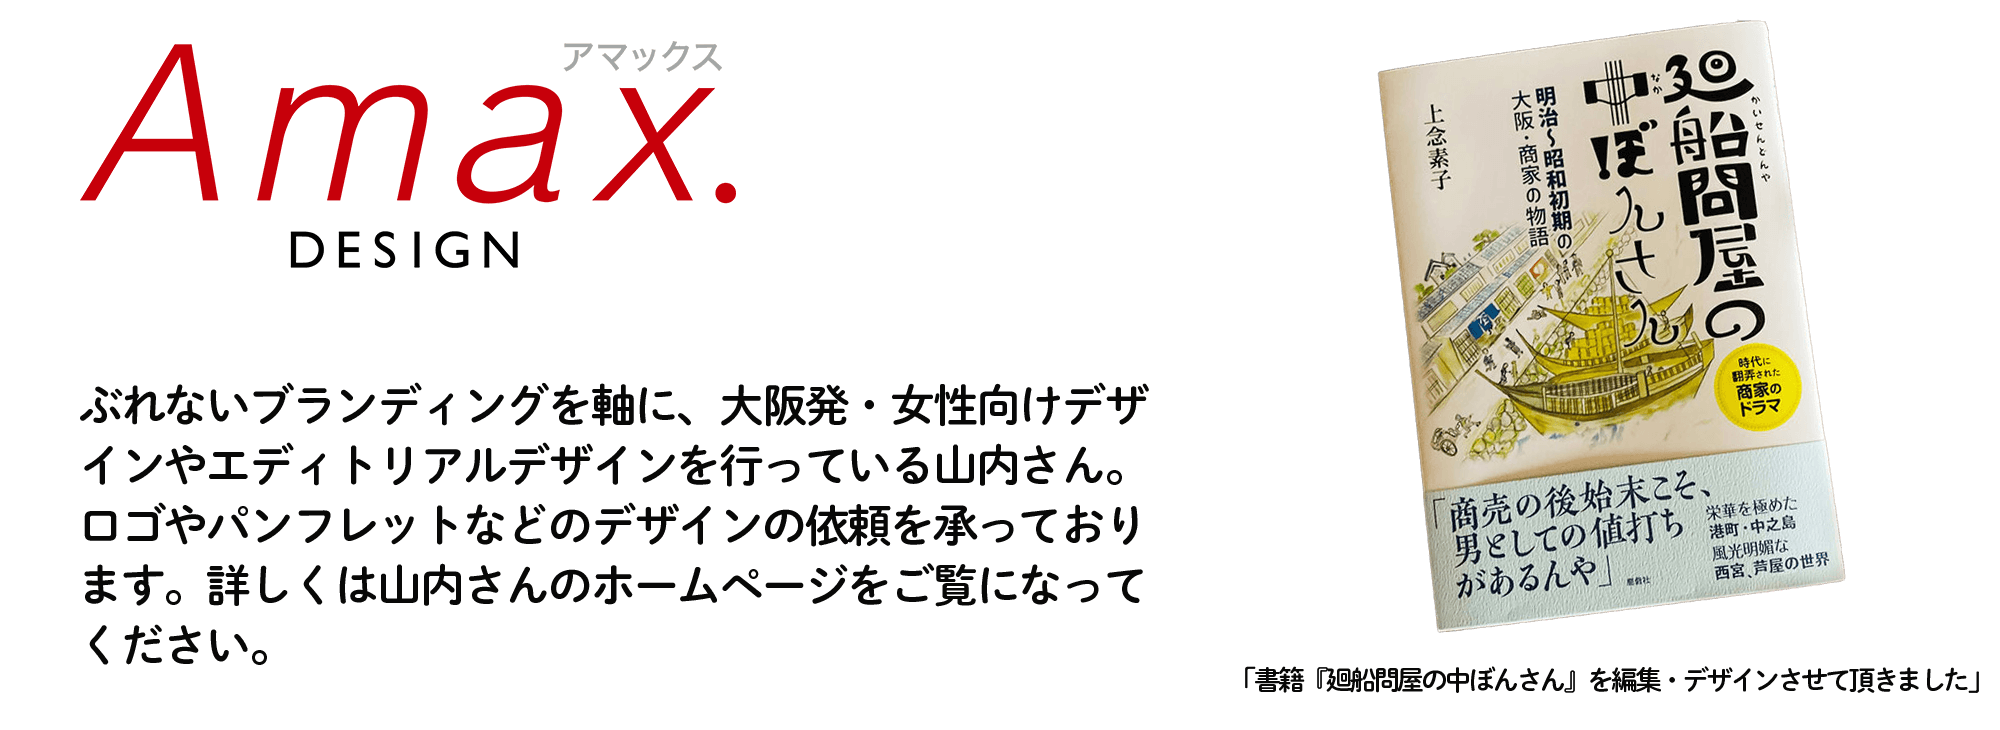 AMAXDESIGNぶれないブランディングを軸に、大阪発・女性向けデザインやエディトリアルデザインを行っている山内さん。ロゴやパンフレットなどのデザインの依頼を承っております。詳しくはホームページをご覧になってください。